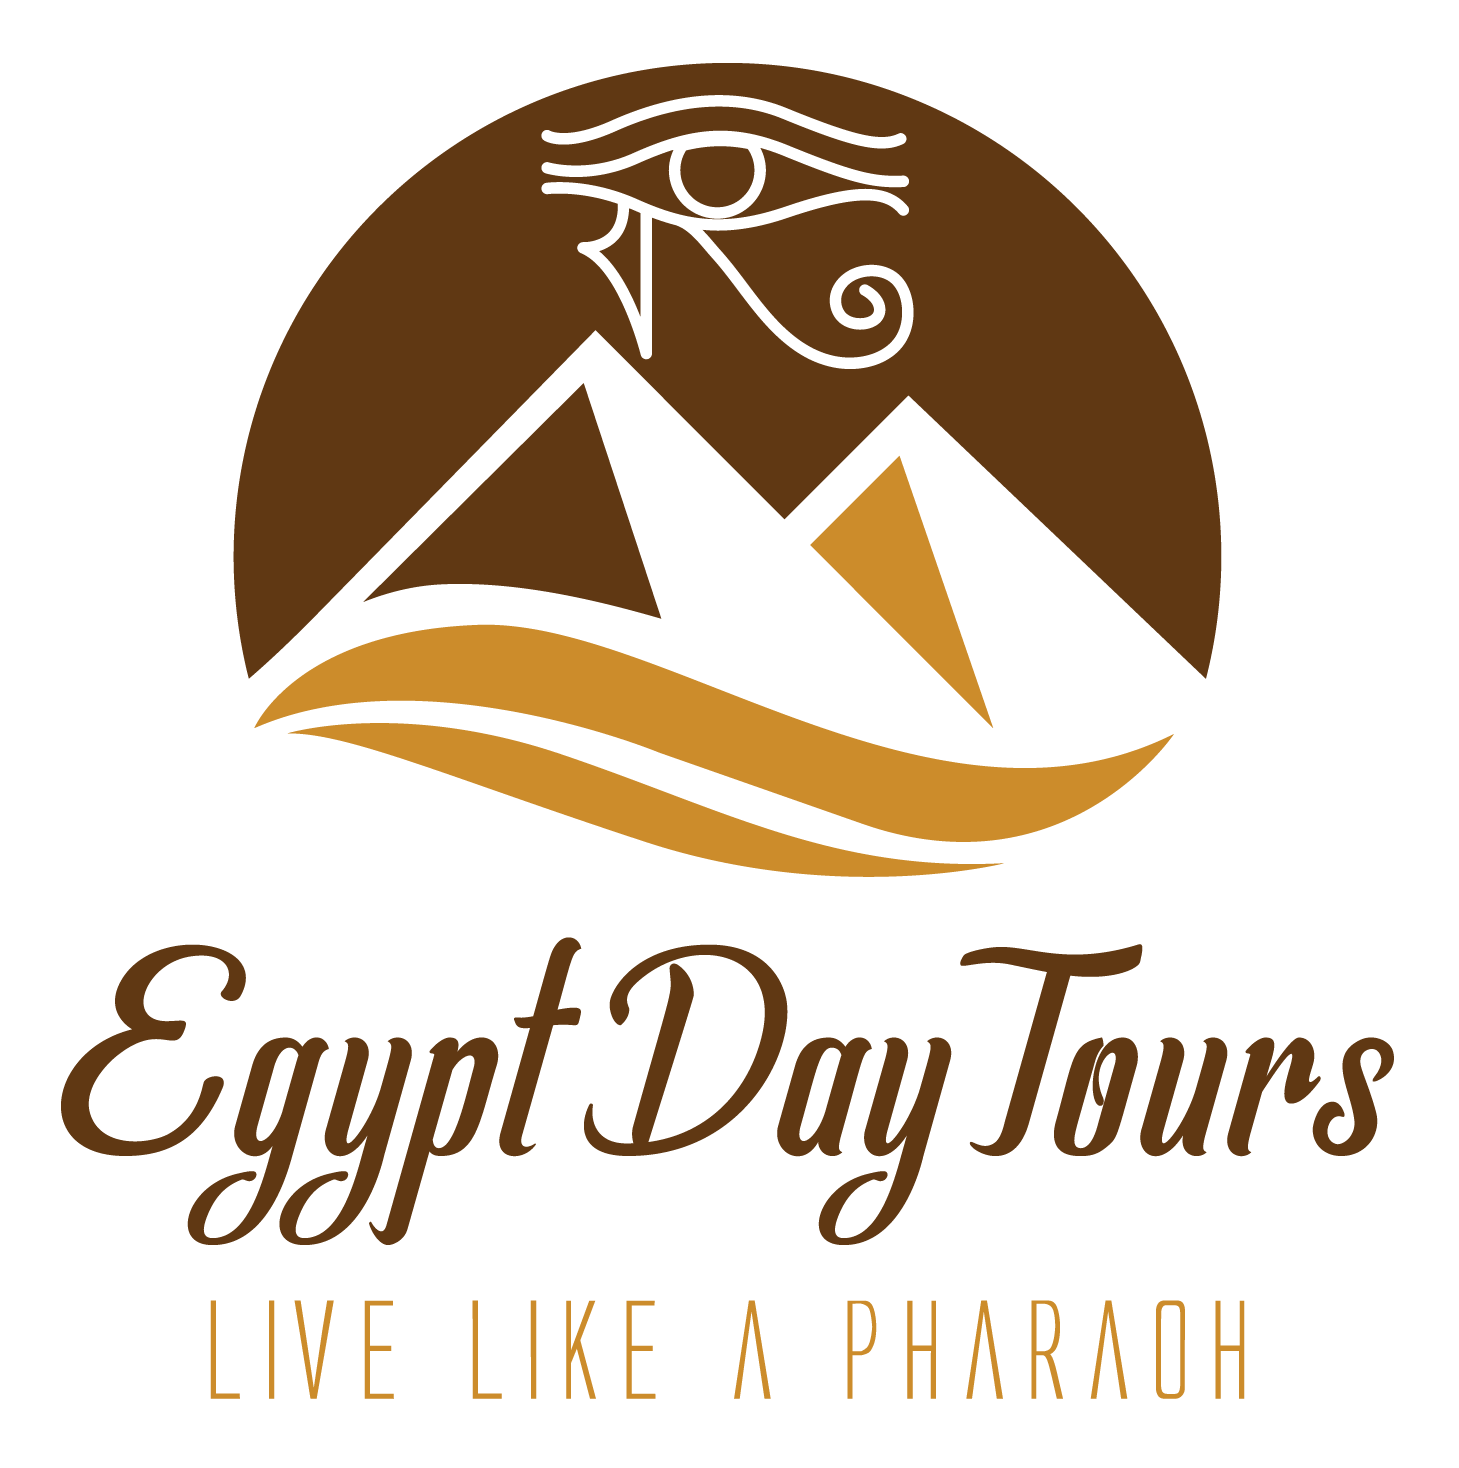 Egypt Day Tours | Abu Simbel Sun Festival Tour 2022 - Egypt Day Tours